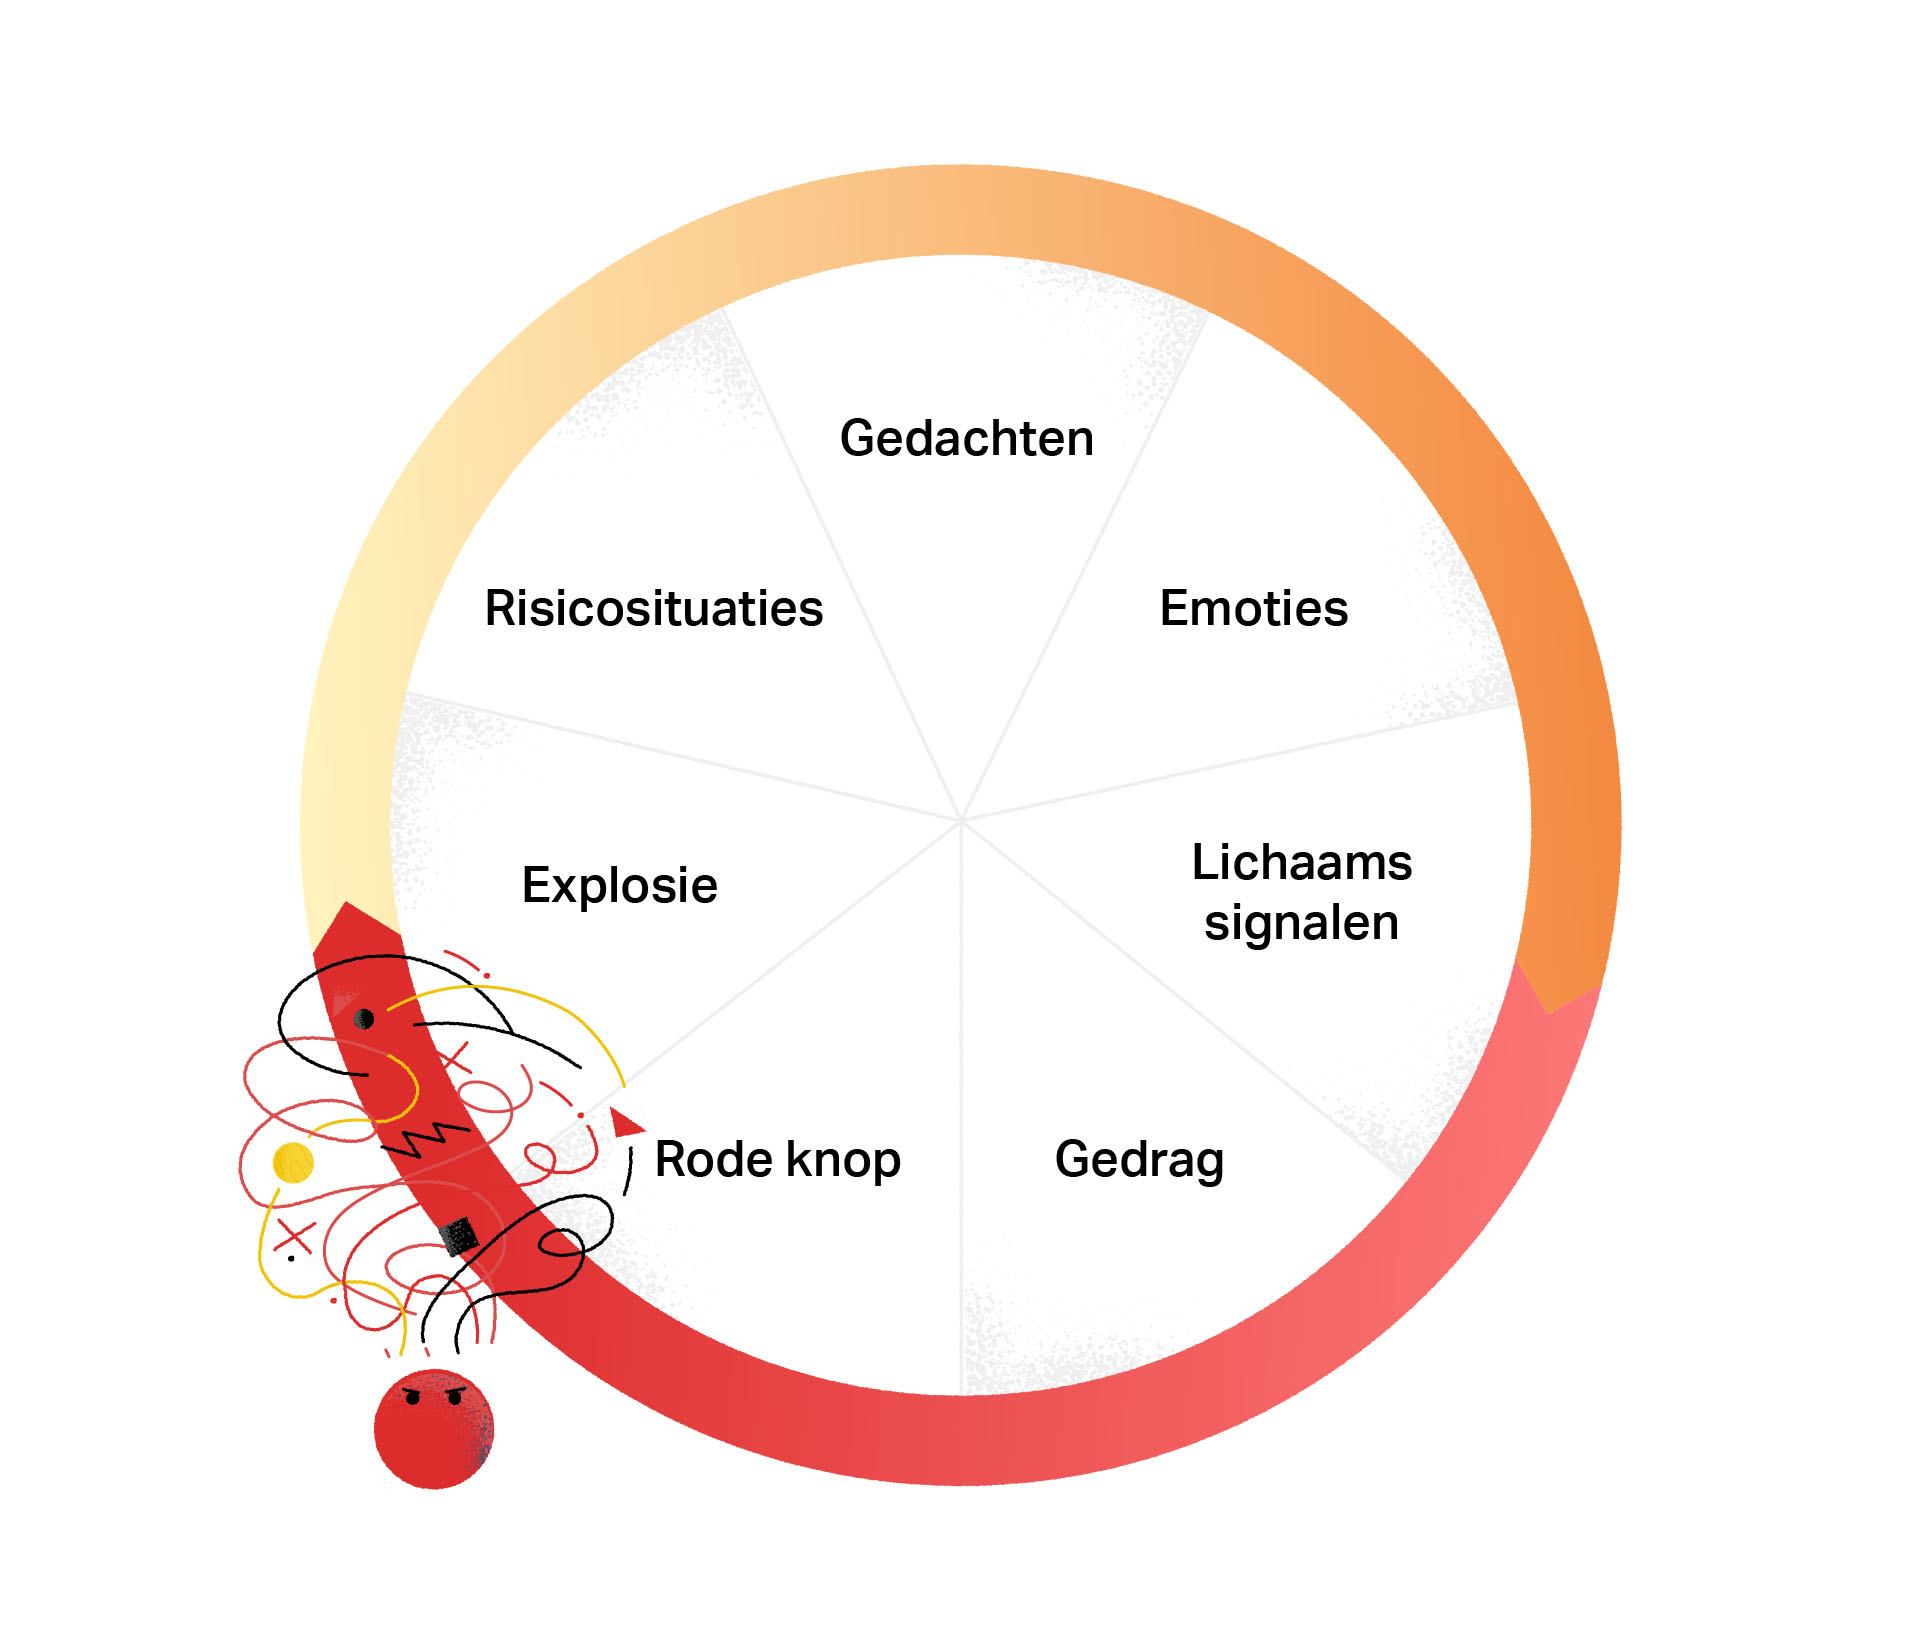 Een cirkel die verdeeld is in de volgende opeenvolgende onderdelen: risicosituaties, gedachten, emoties, lichaamssignalen, gedrag, rode knop, explosie